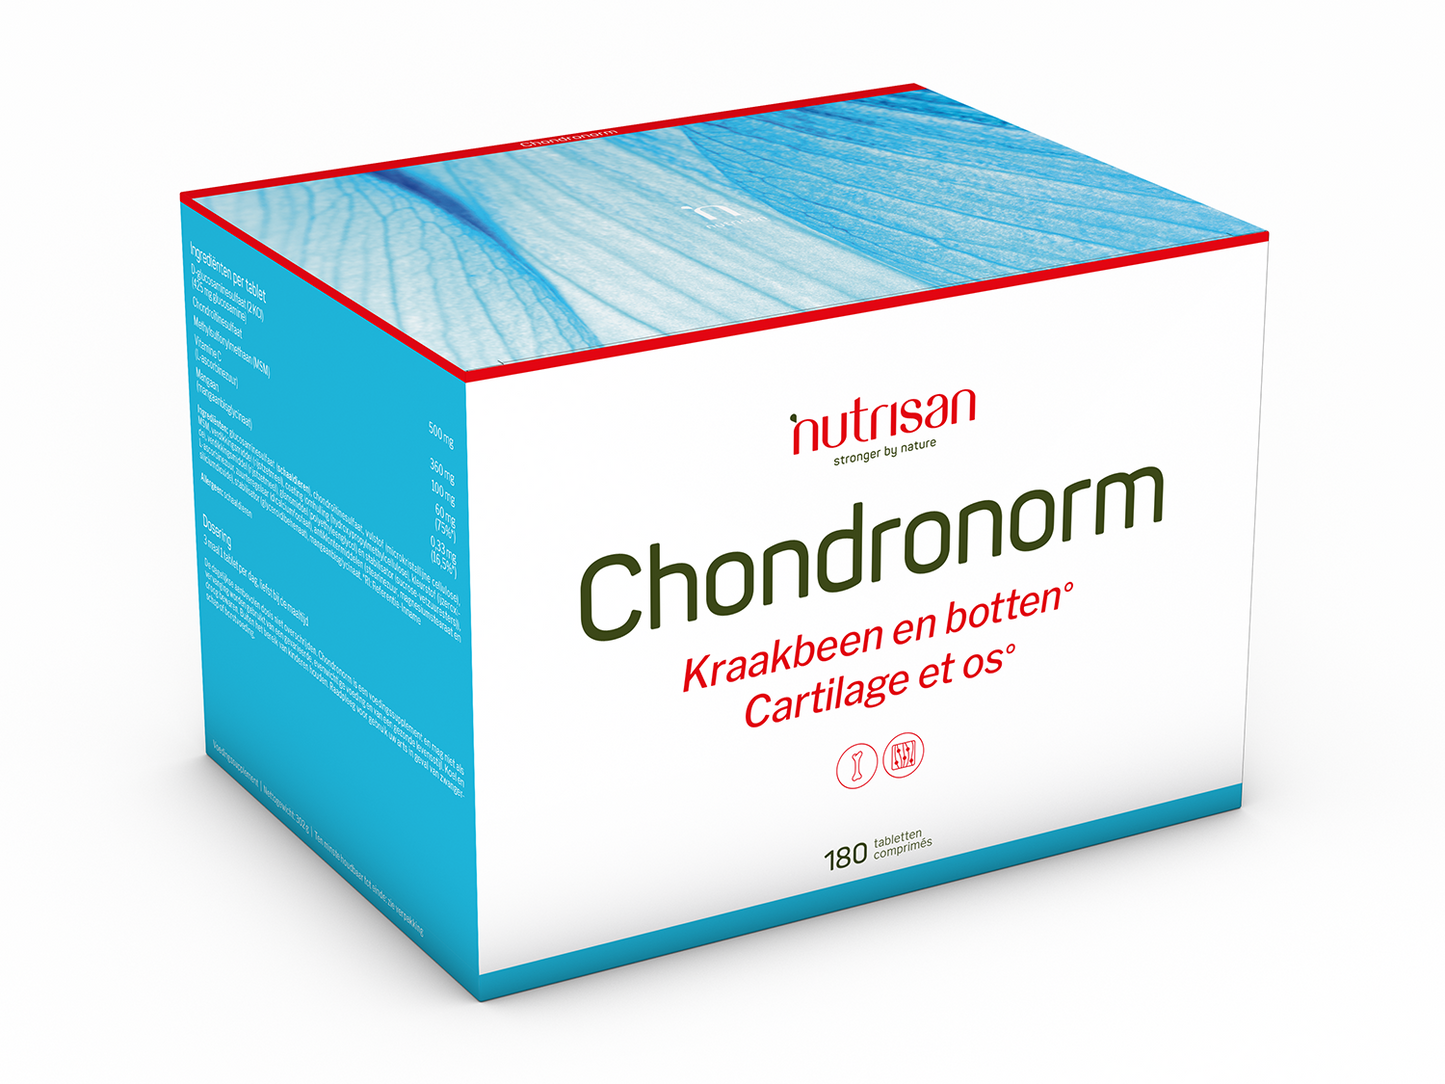 Nutrisan Chondronorm - Supplement voor kraakbeen en botten